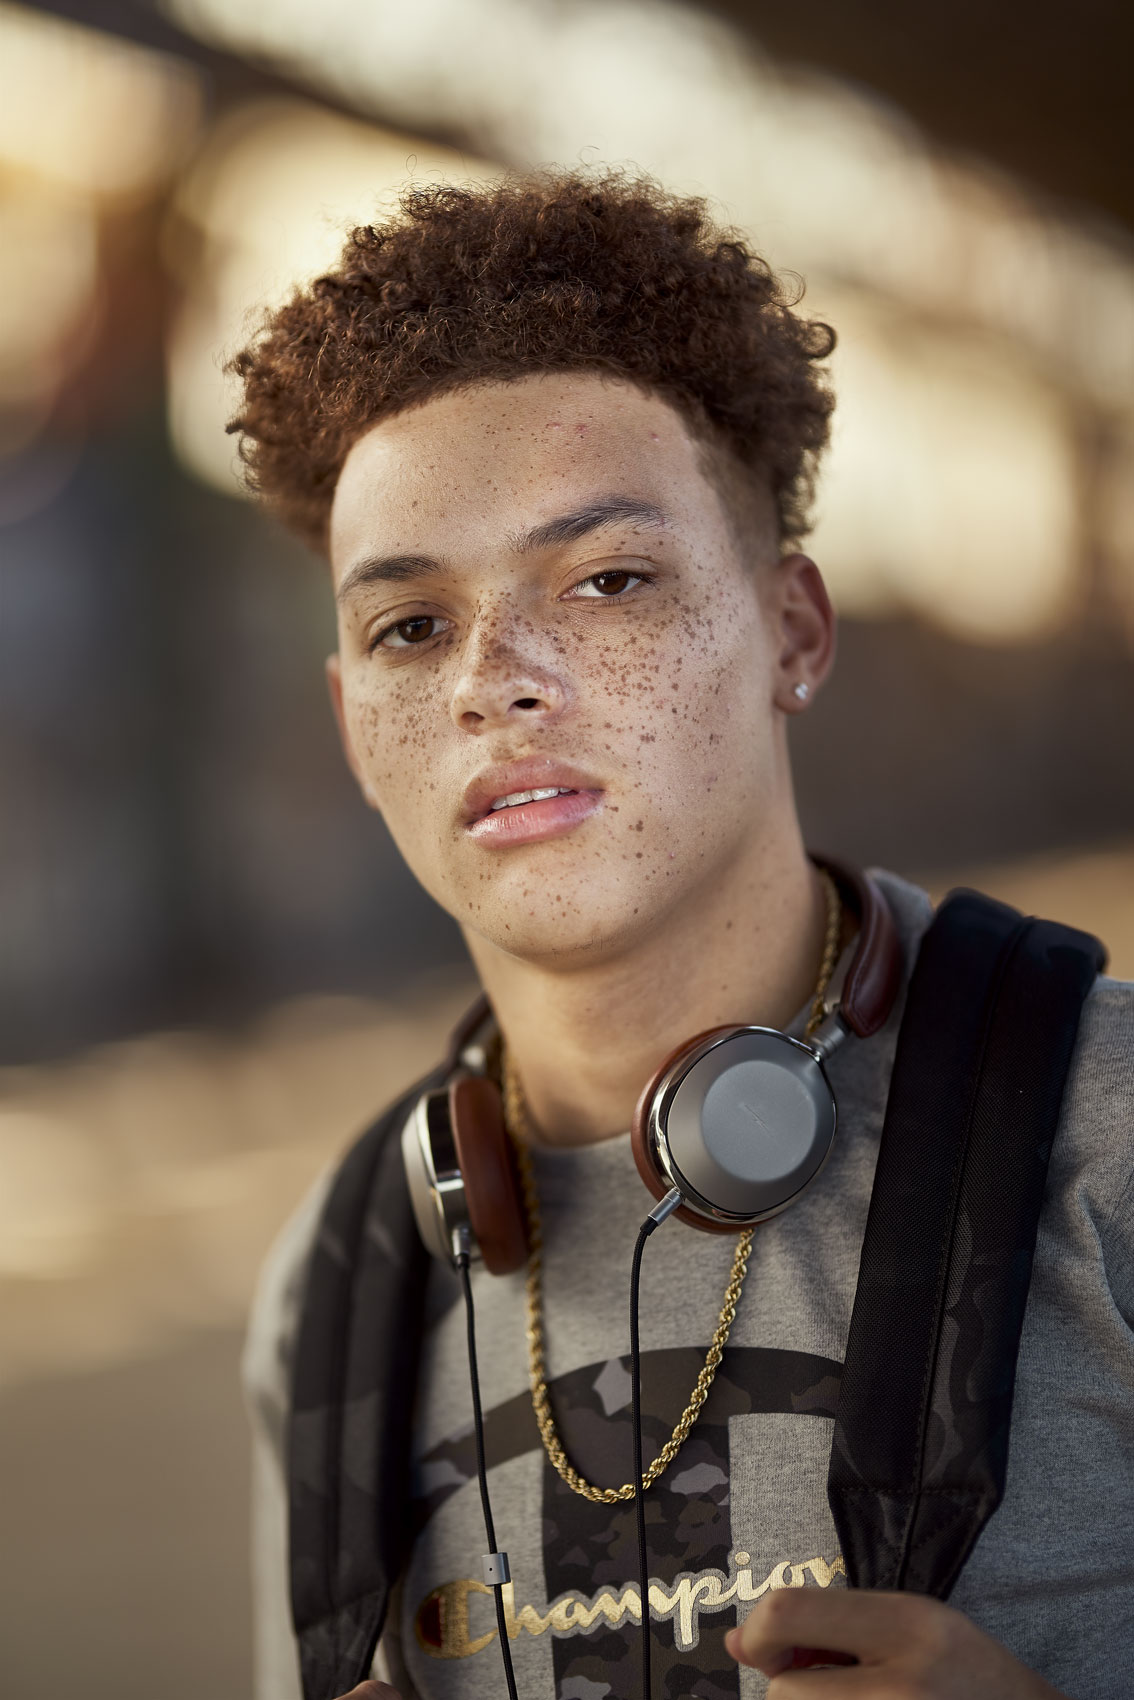 Tyler Headphones Portrait